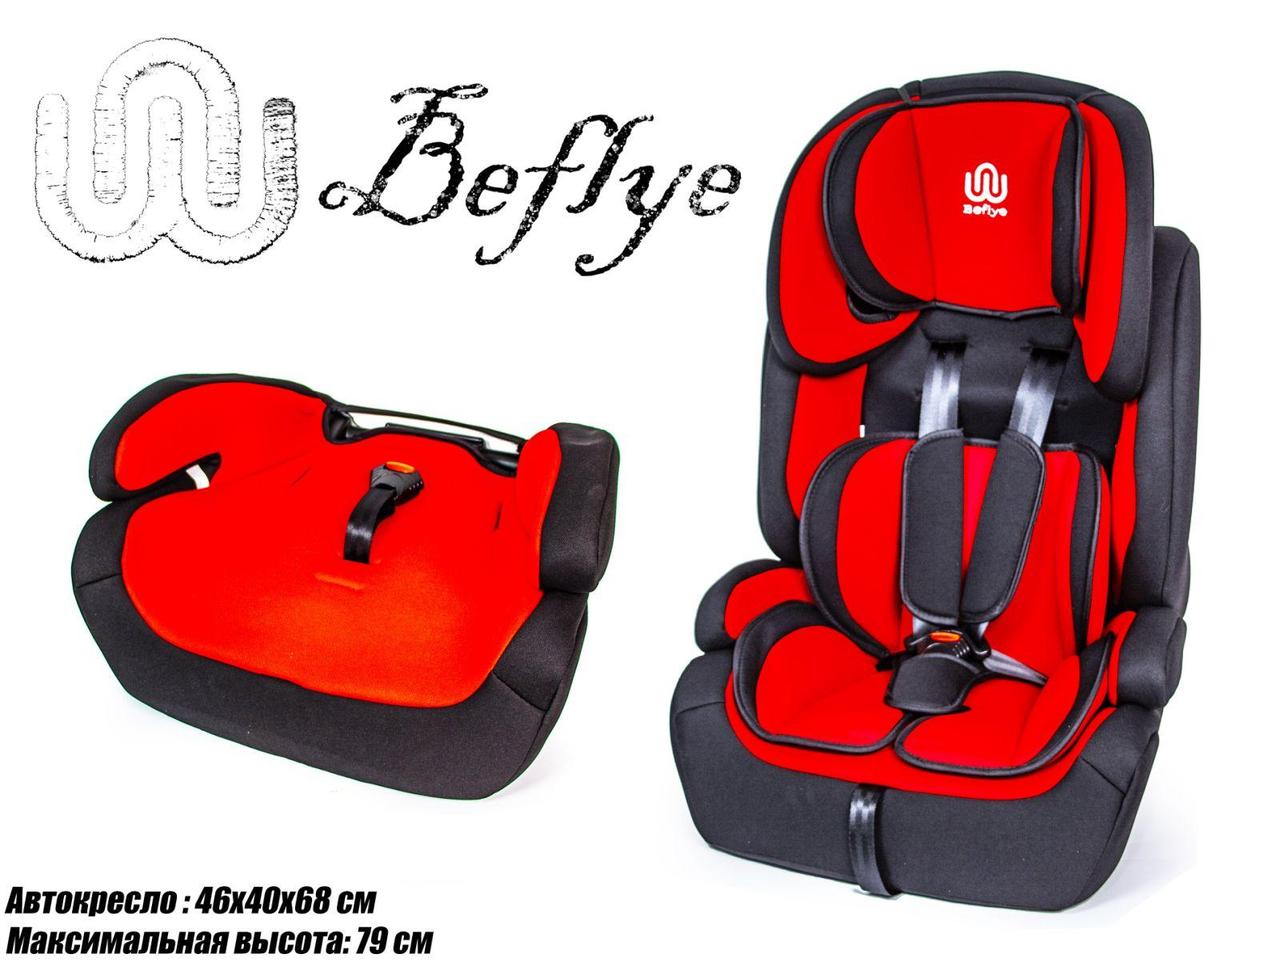 Детское автокресло BeFlye универсальное, группа 1/2/3, вес ребенка 9-36 кг красный цвет.